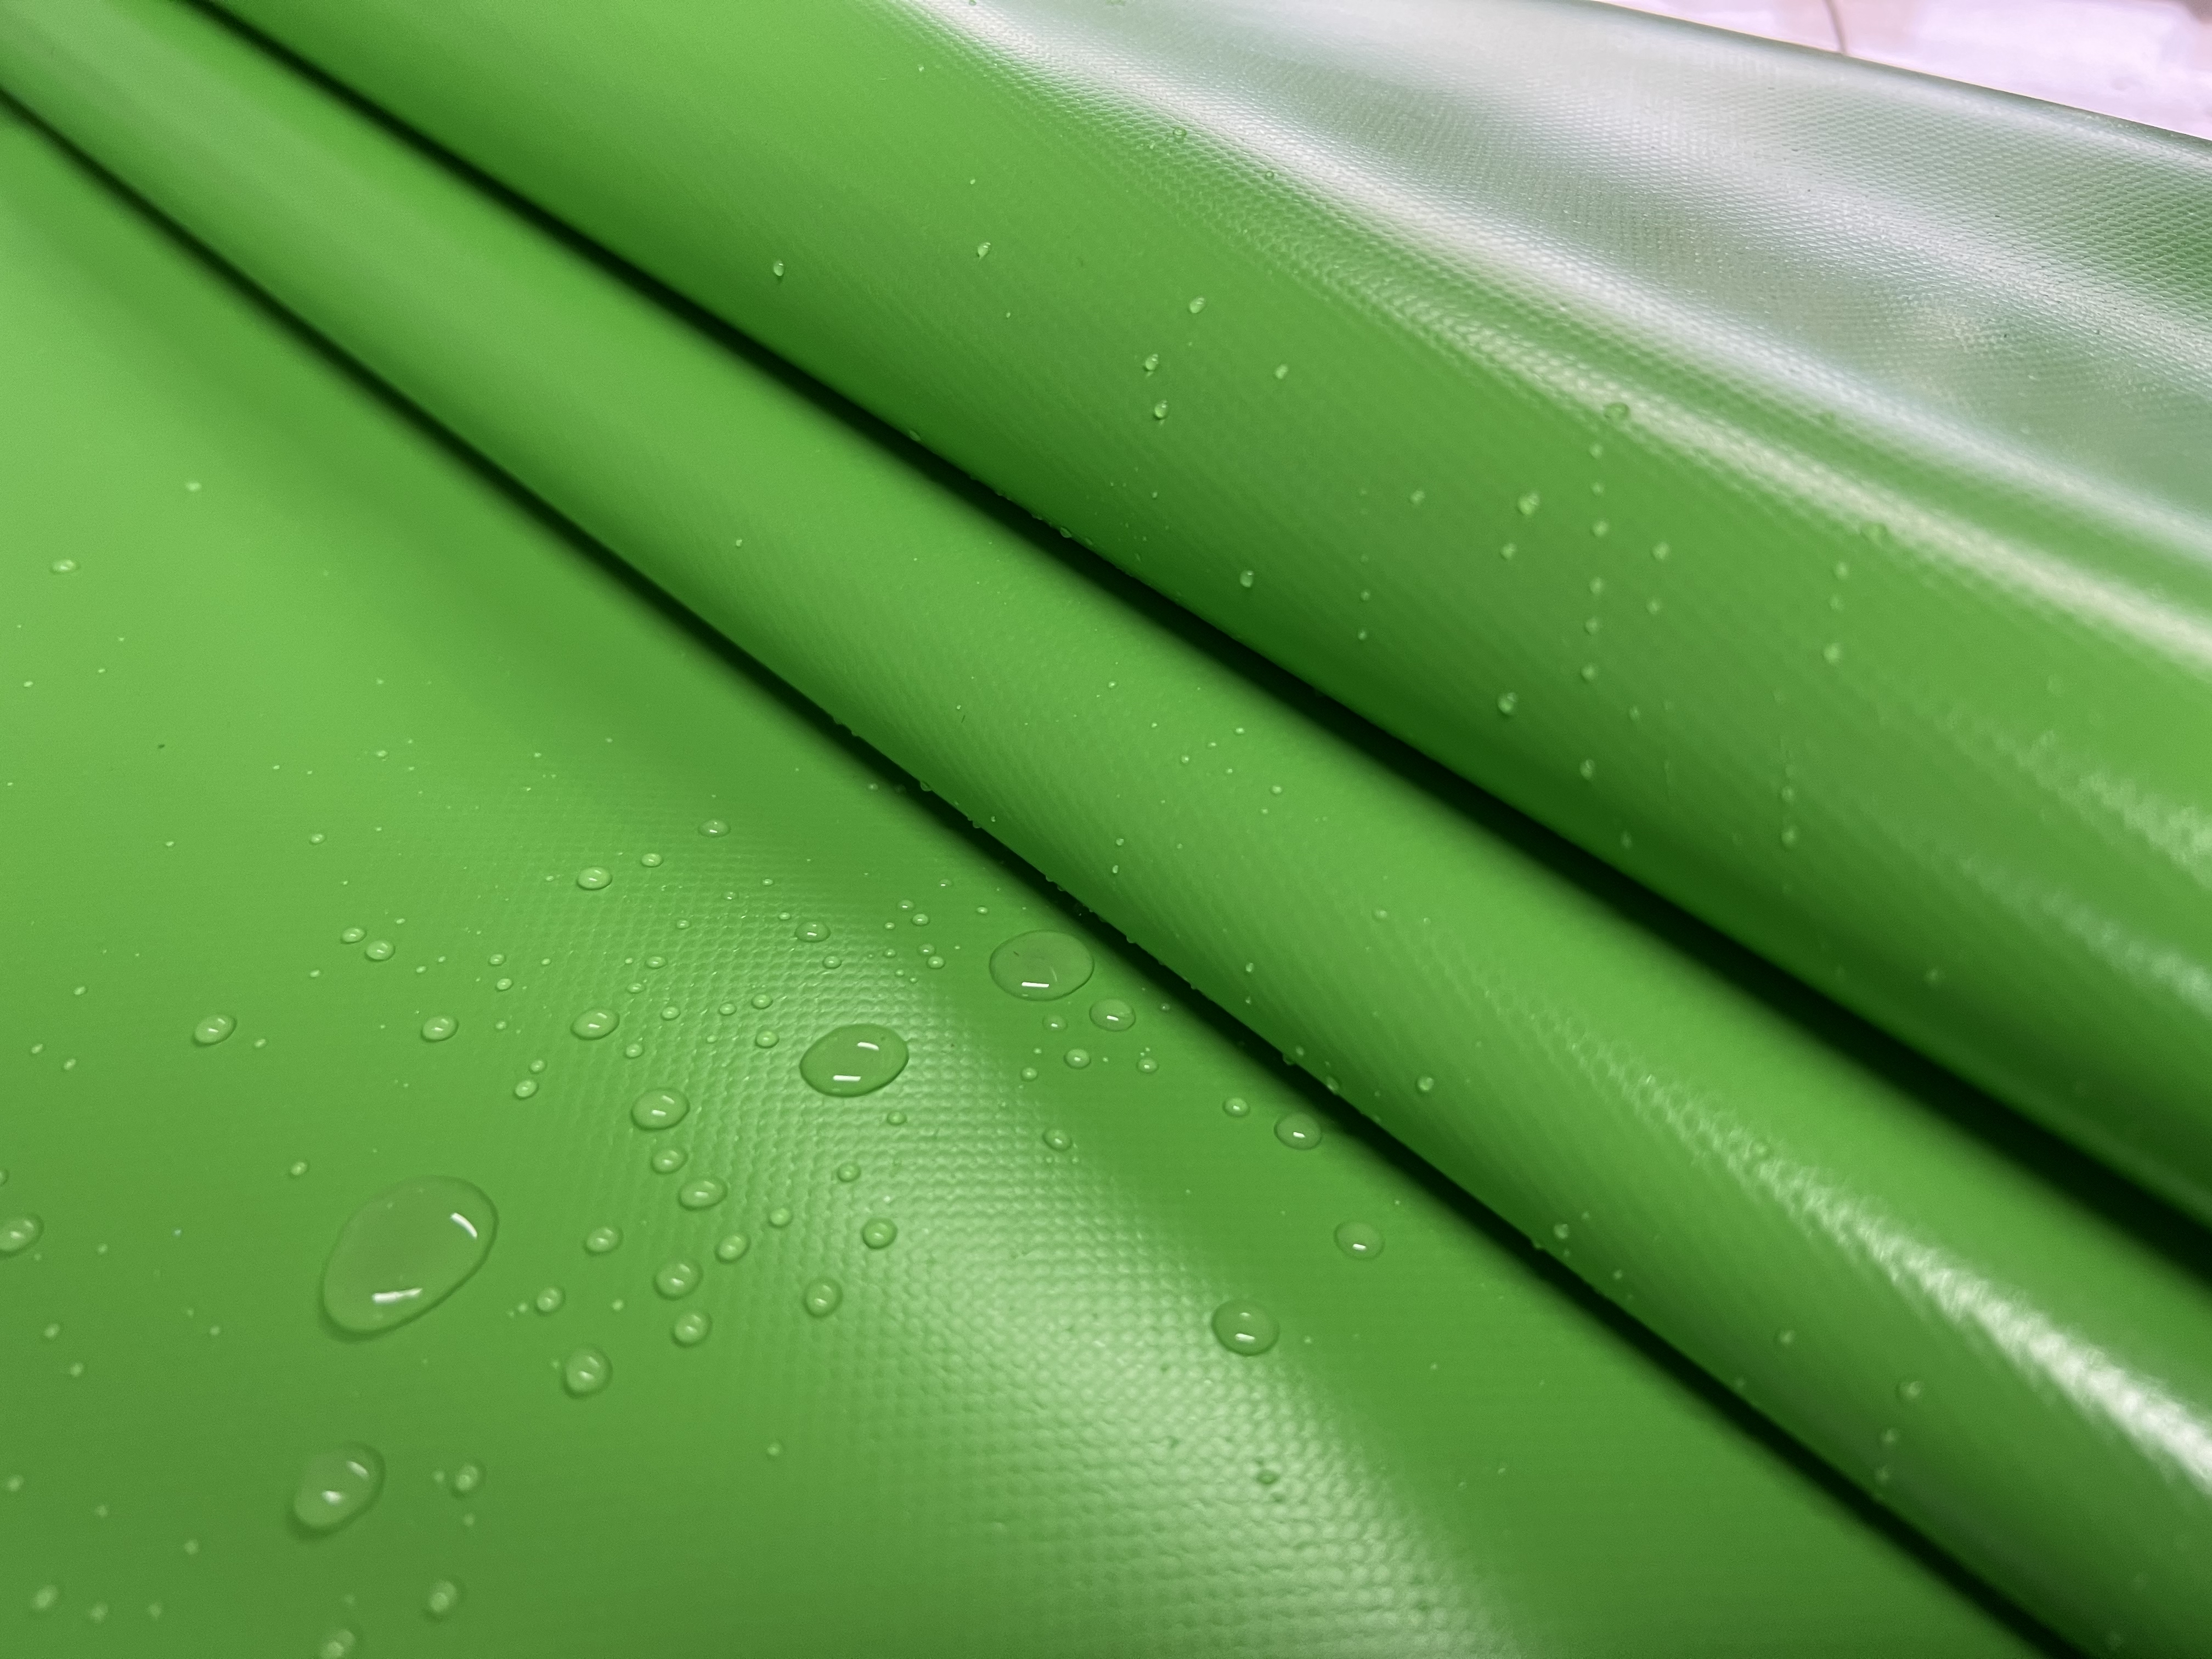 PVC coated tarpaulin,green tarpaulin,waterproof tarpaulin,tarpaulin cover